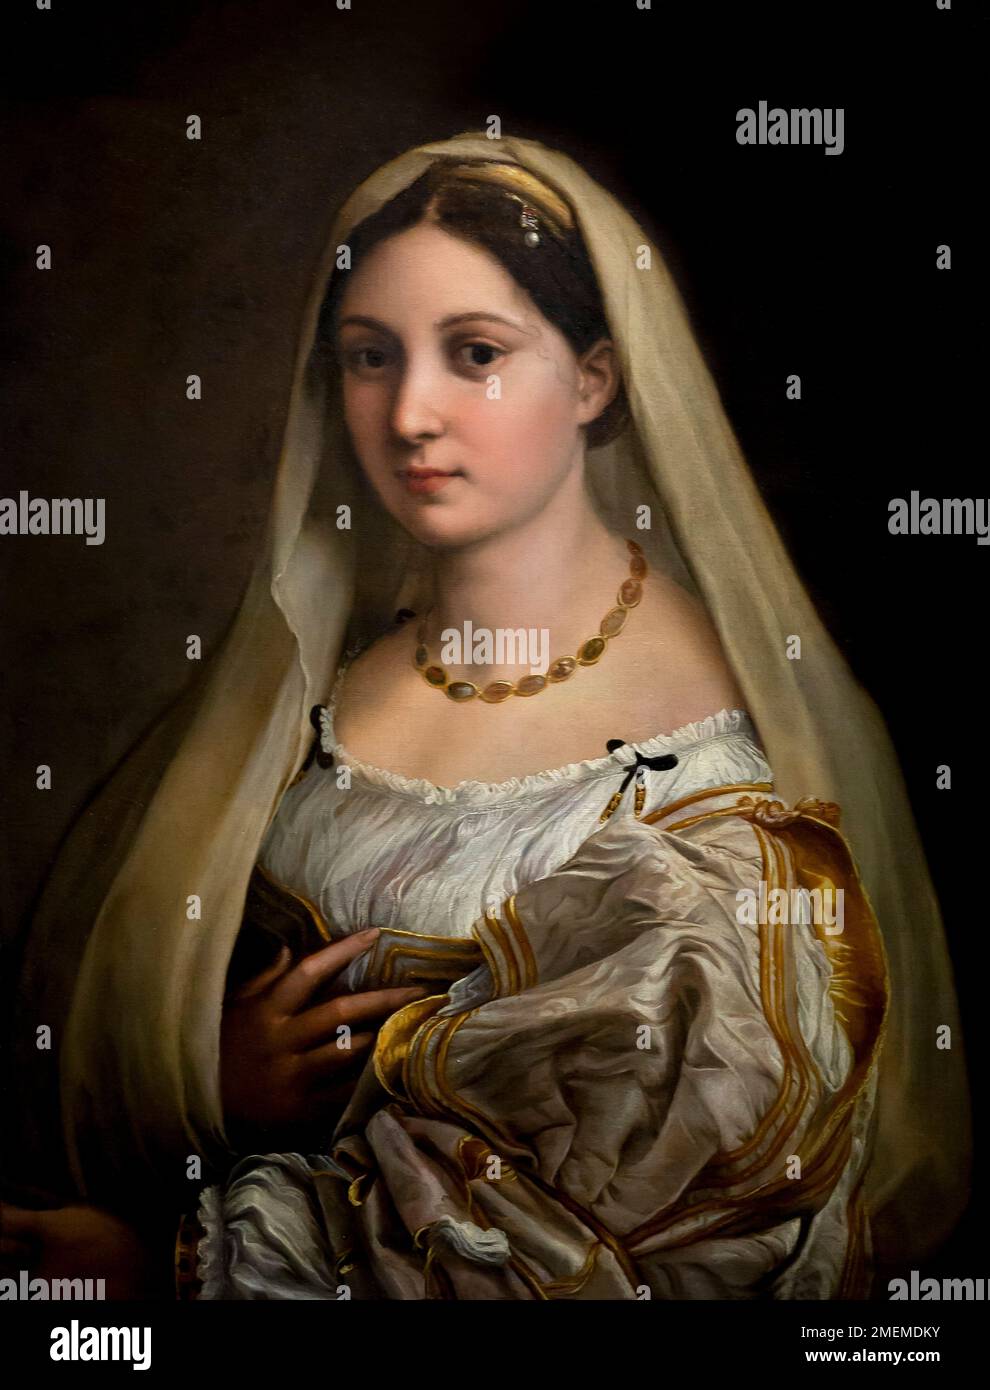 La femme voilée, la Donna Velata, Raphaël, vers 1513-1514, Palazzo Pitti, Florence, Italie Banque D'Images